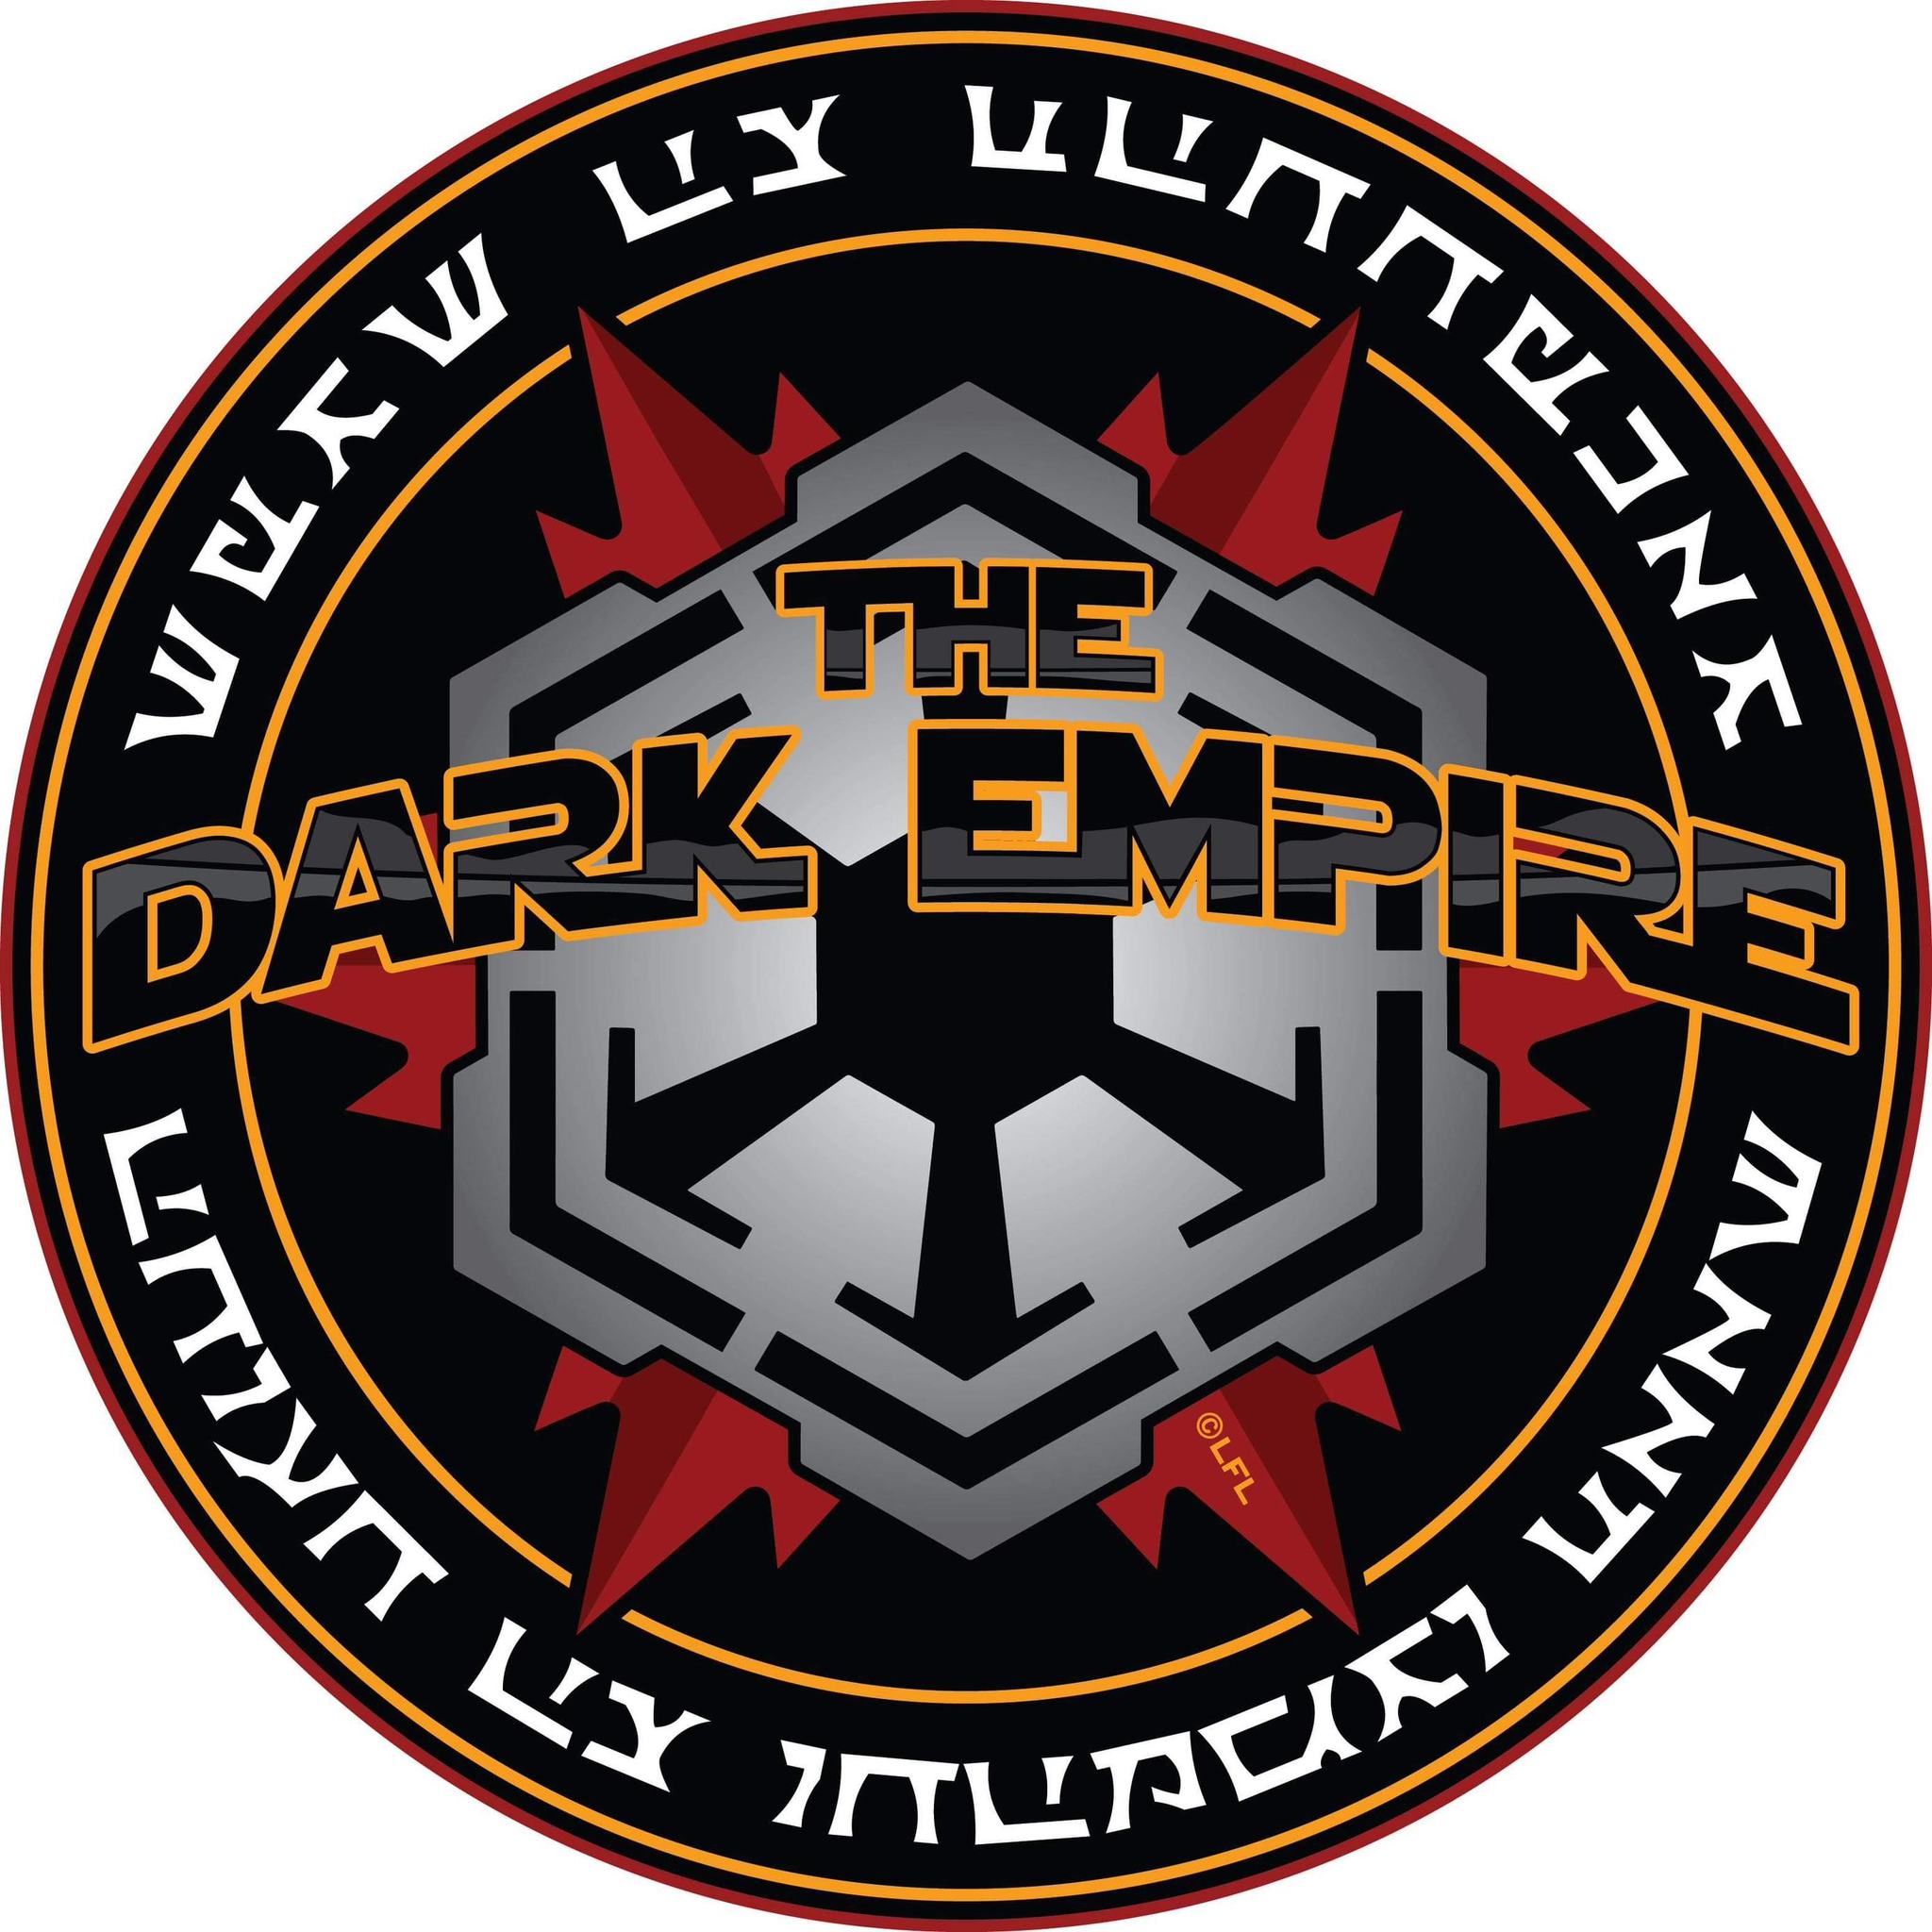 The Dark Empire: Darkghast Spire